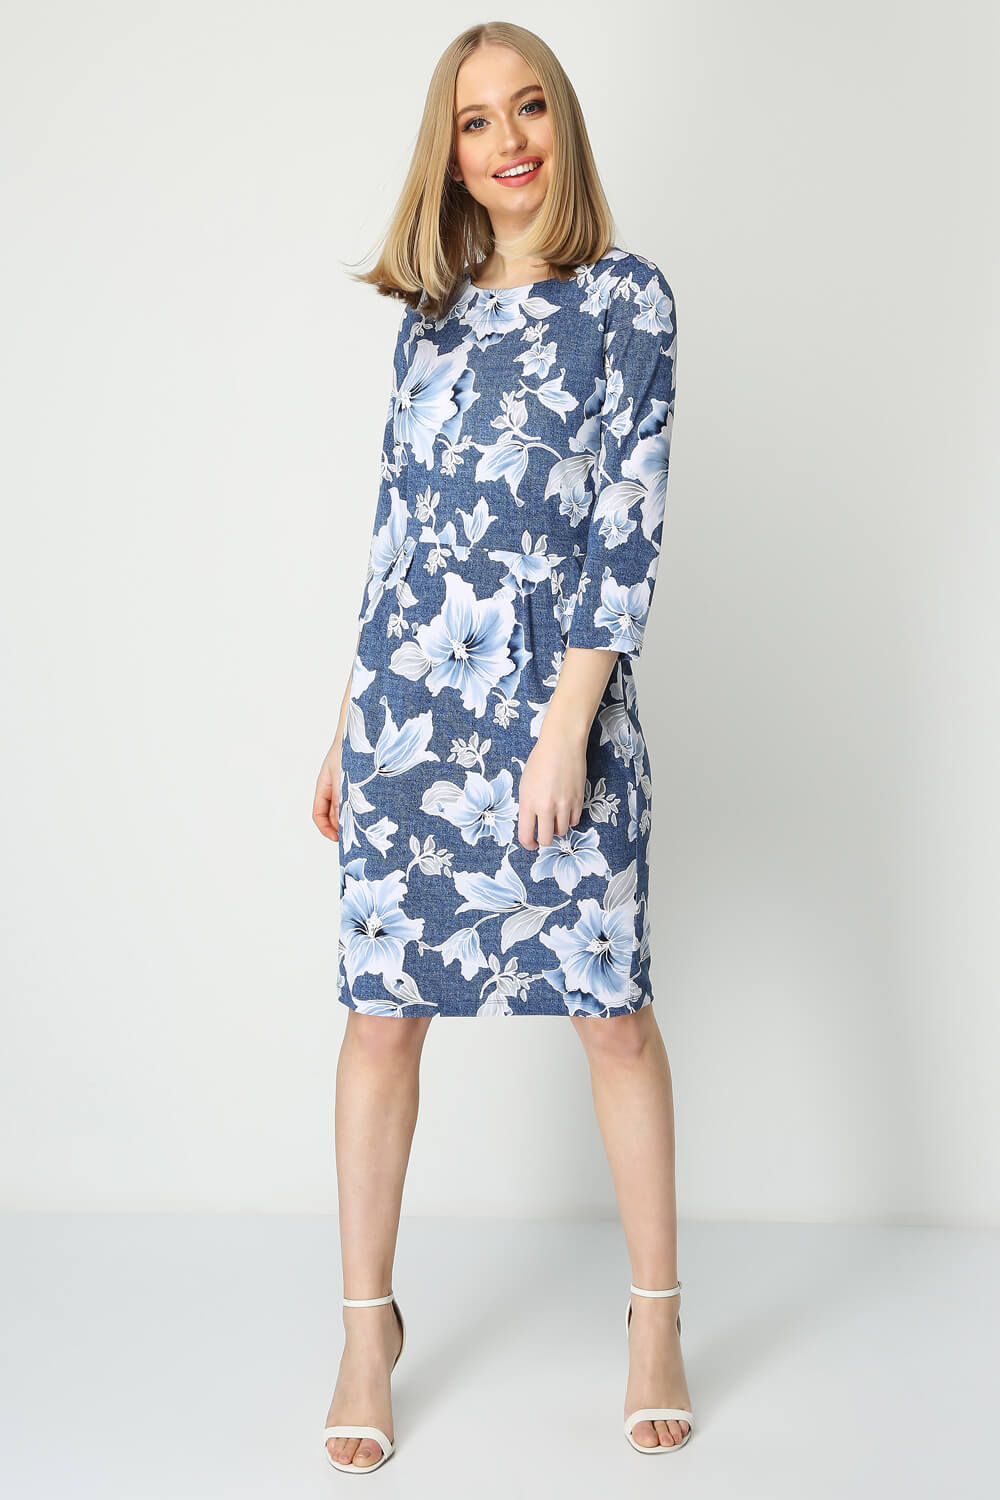 Blue Floral Print Pocket Dress, Image 2 of 4